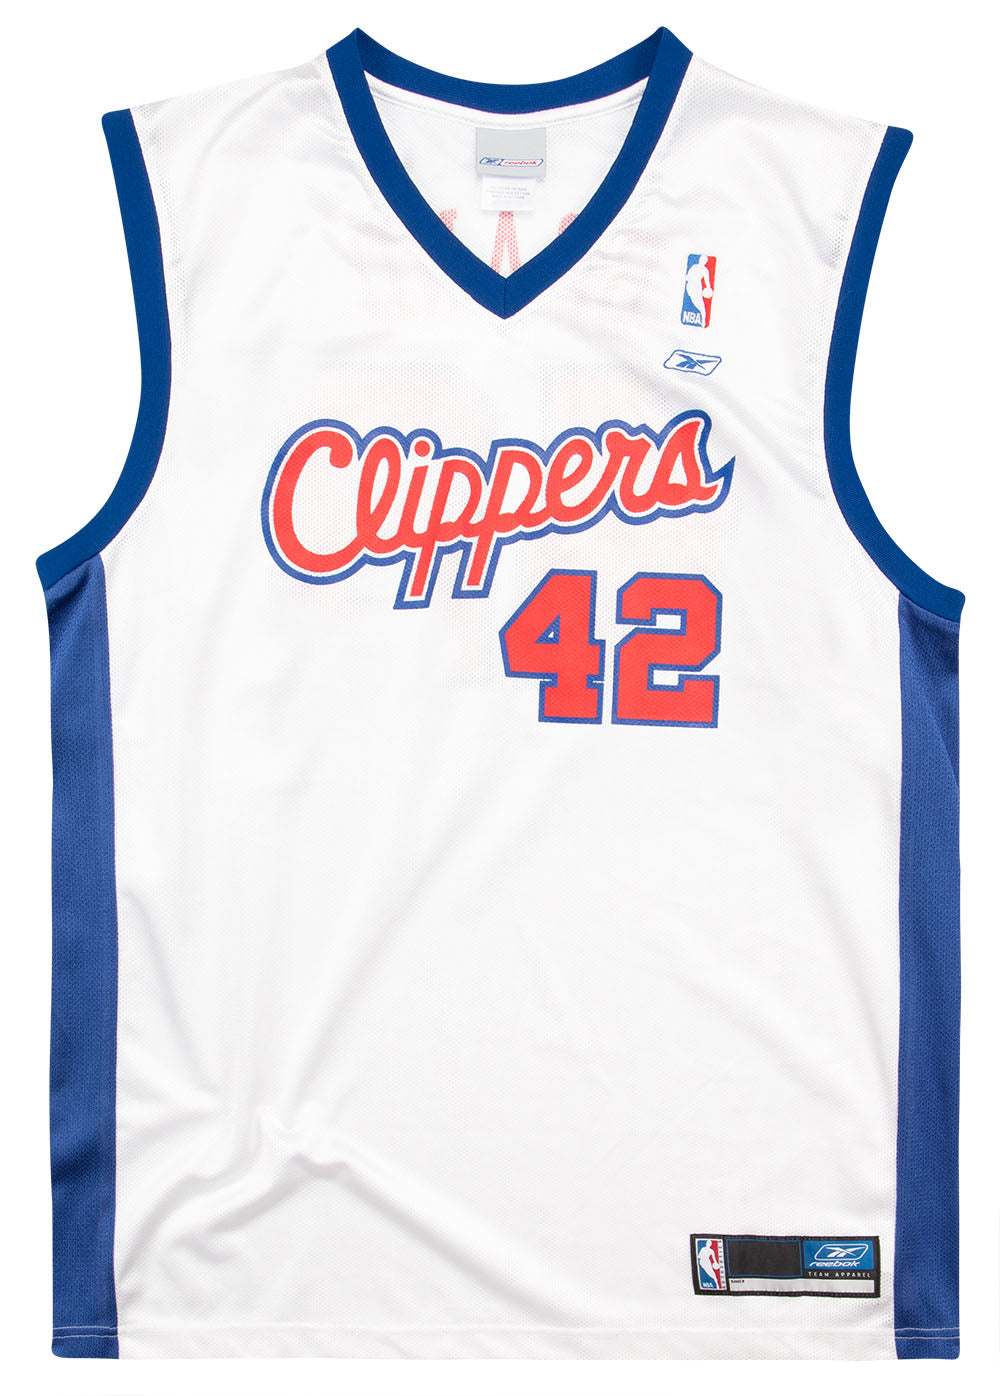 Reebok, Shirts, Elton Brand 42 Los Angeles La Clippers Nba Reebok Xl White  Jersey New Men